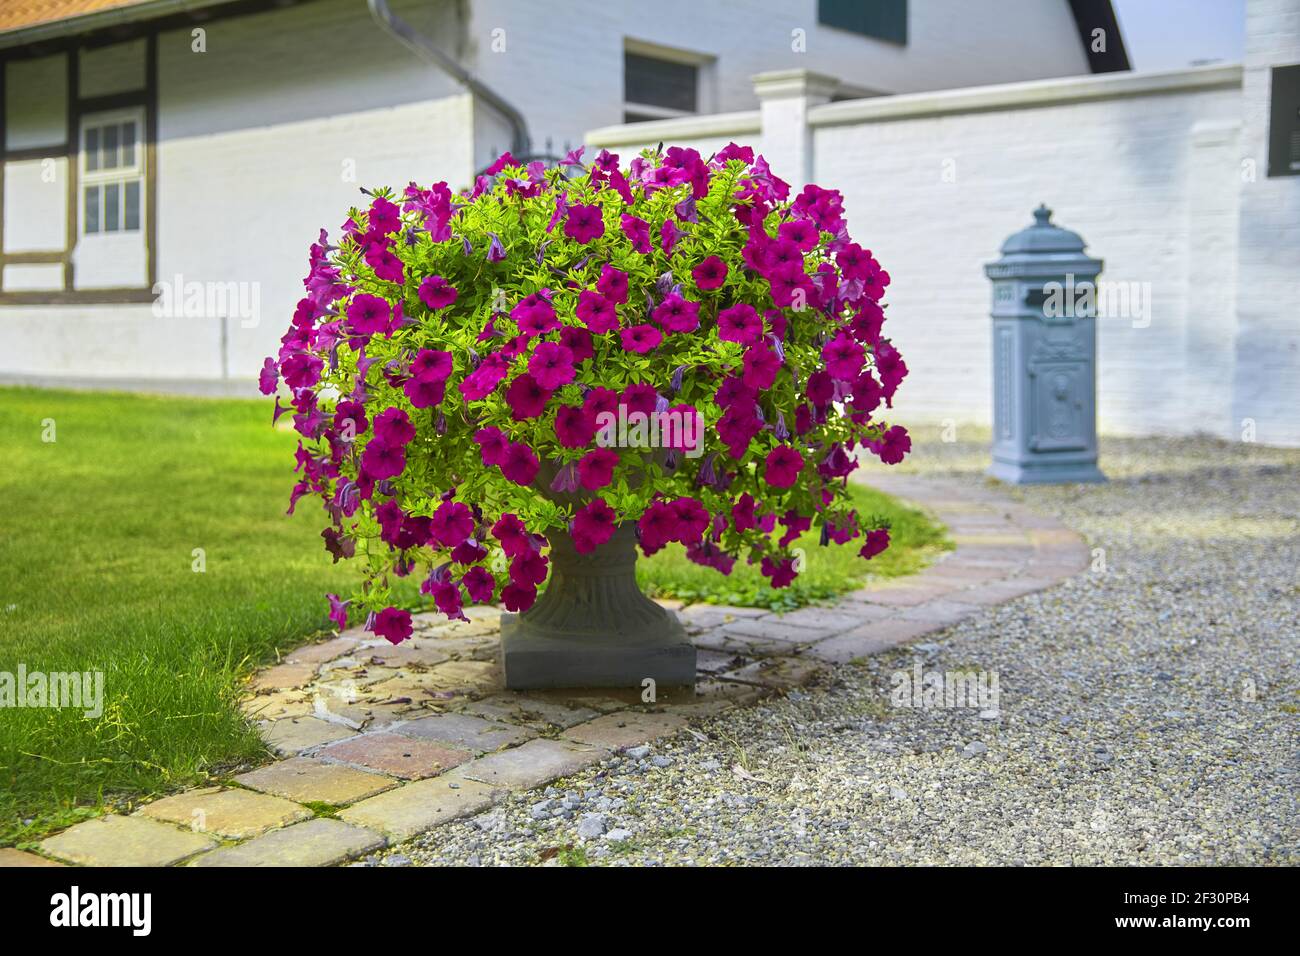 Bellissimo ingresso al parco con fiori, (petunia axillaris viola) Foto Stock